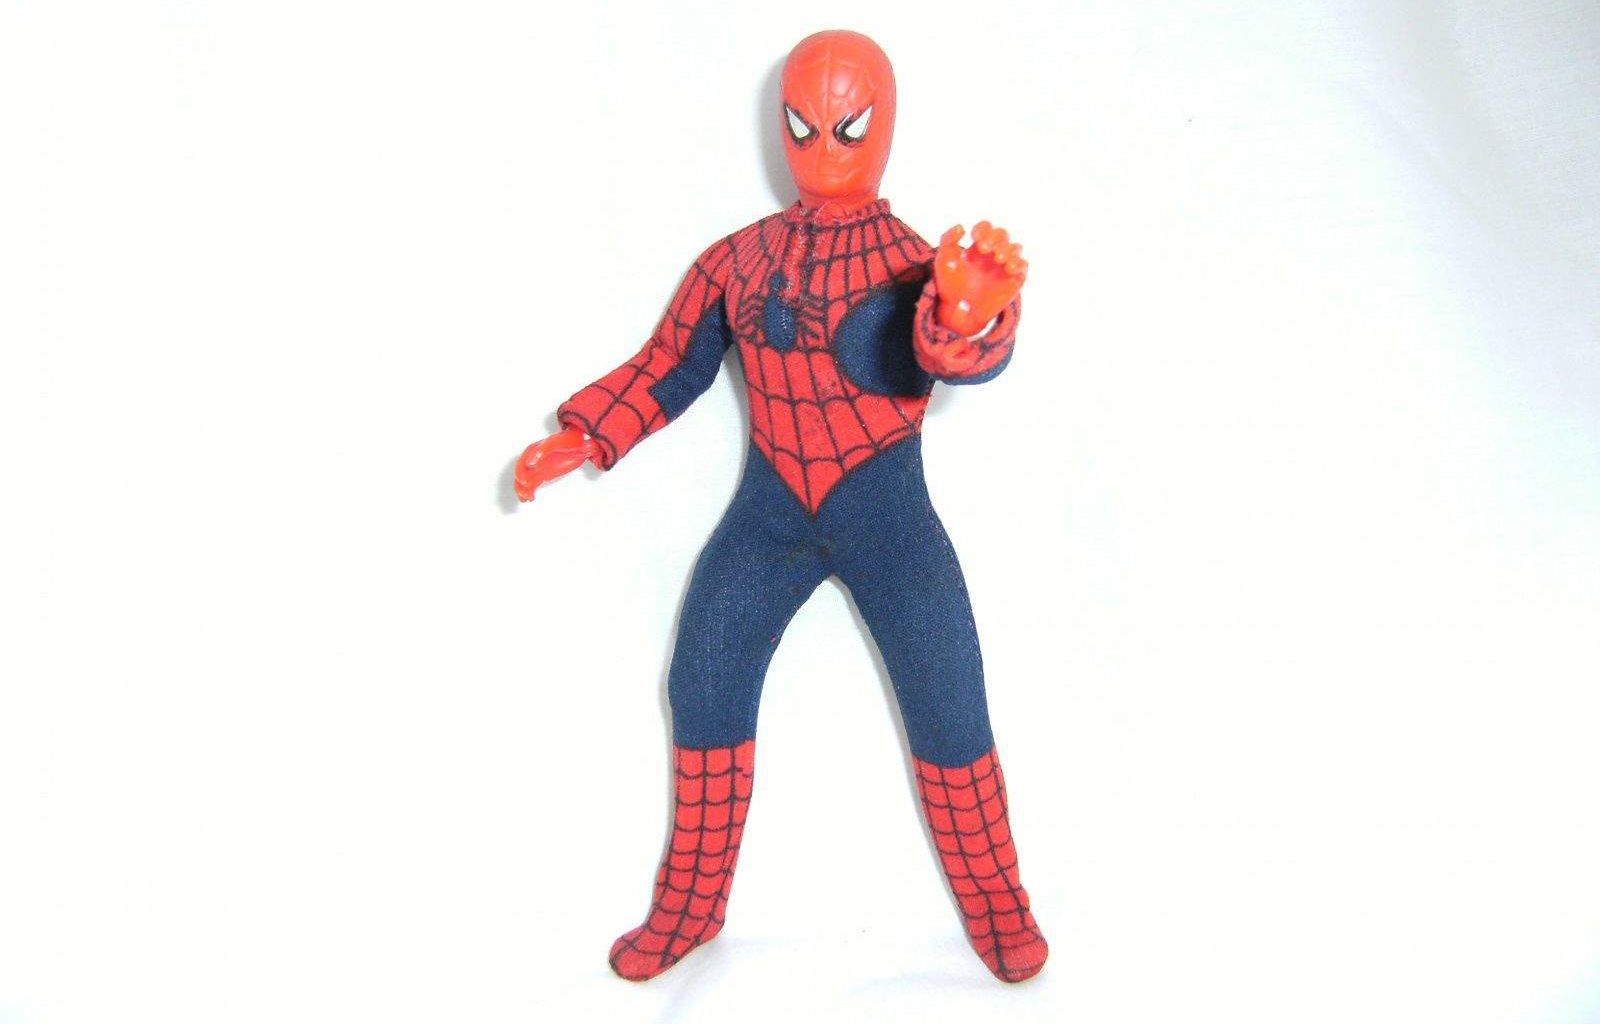 Mego-Spider-man-Action-figure